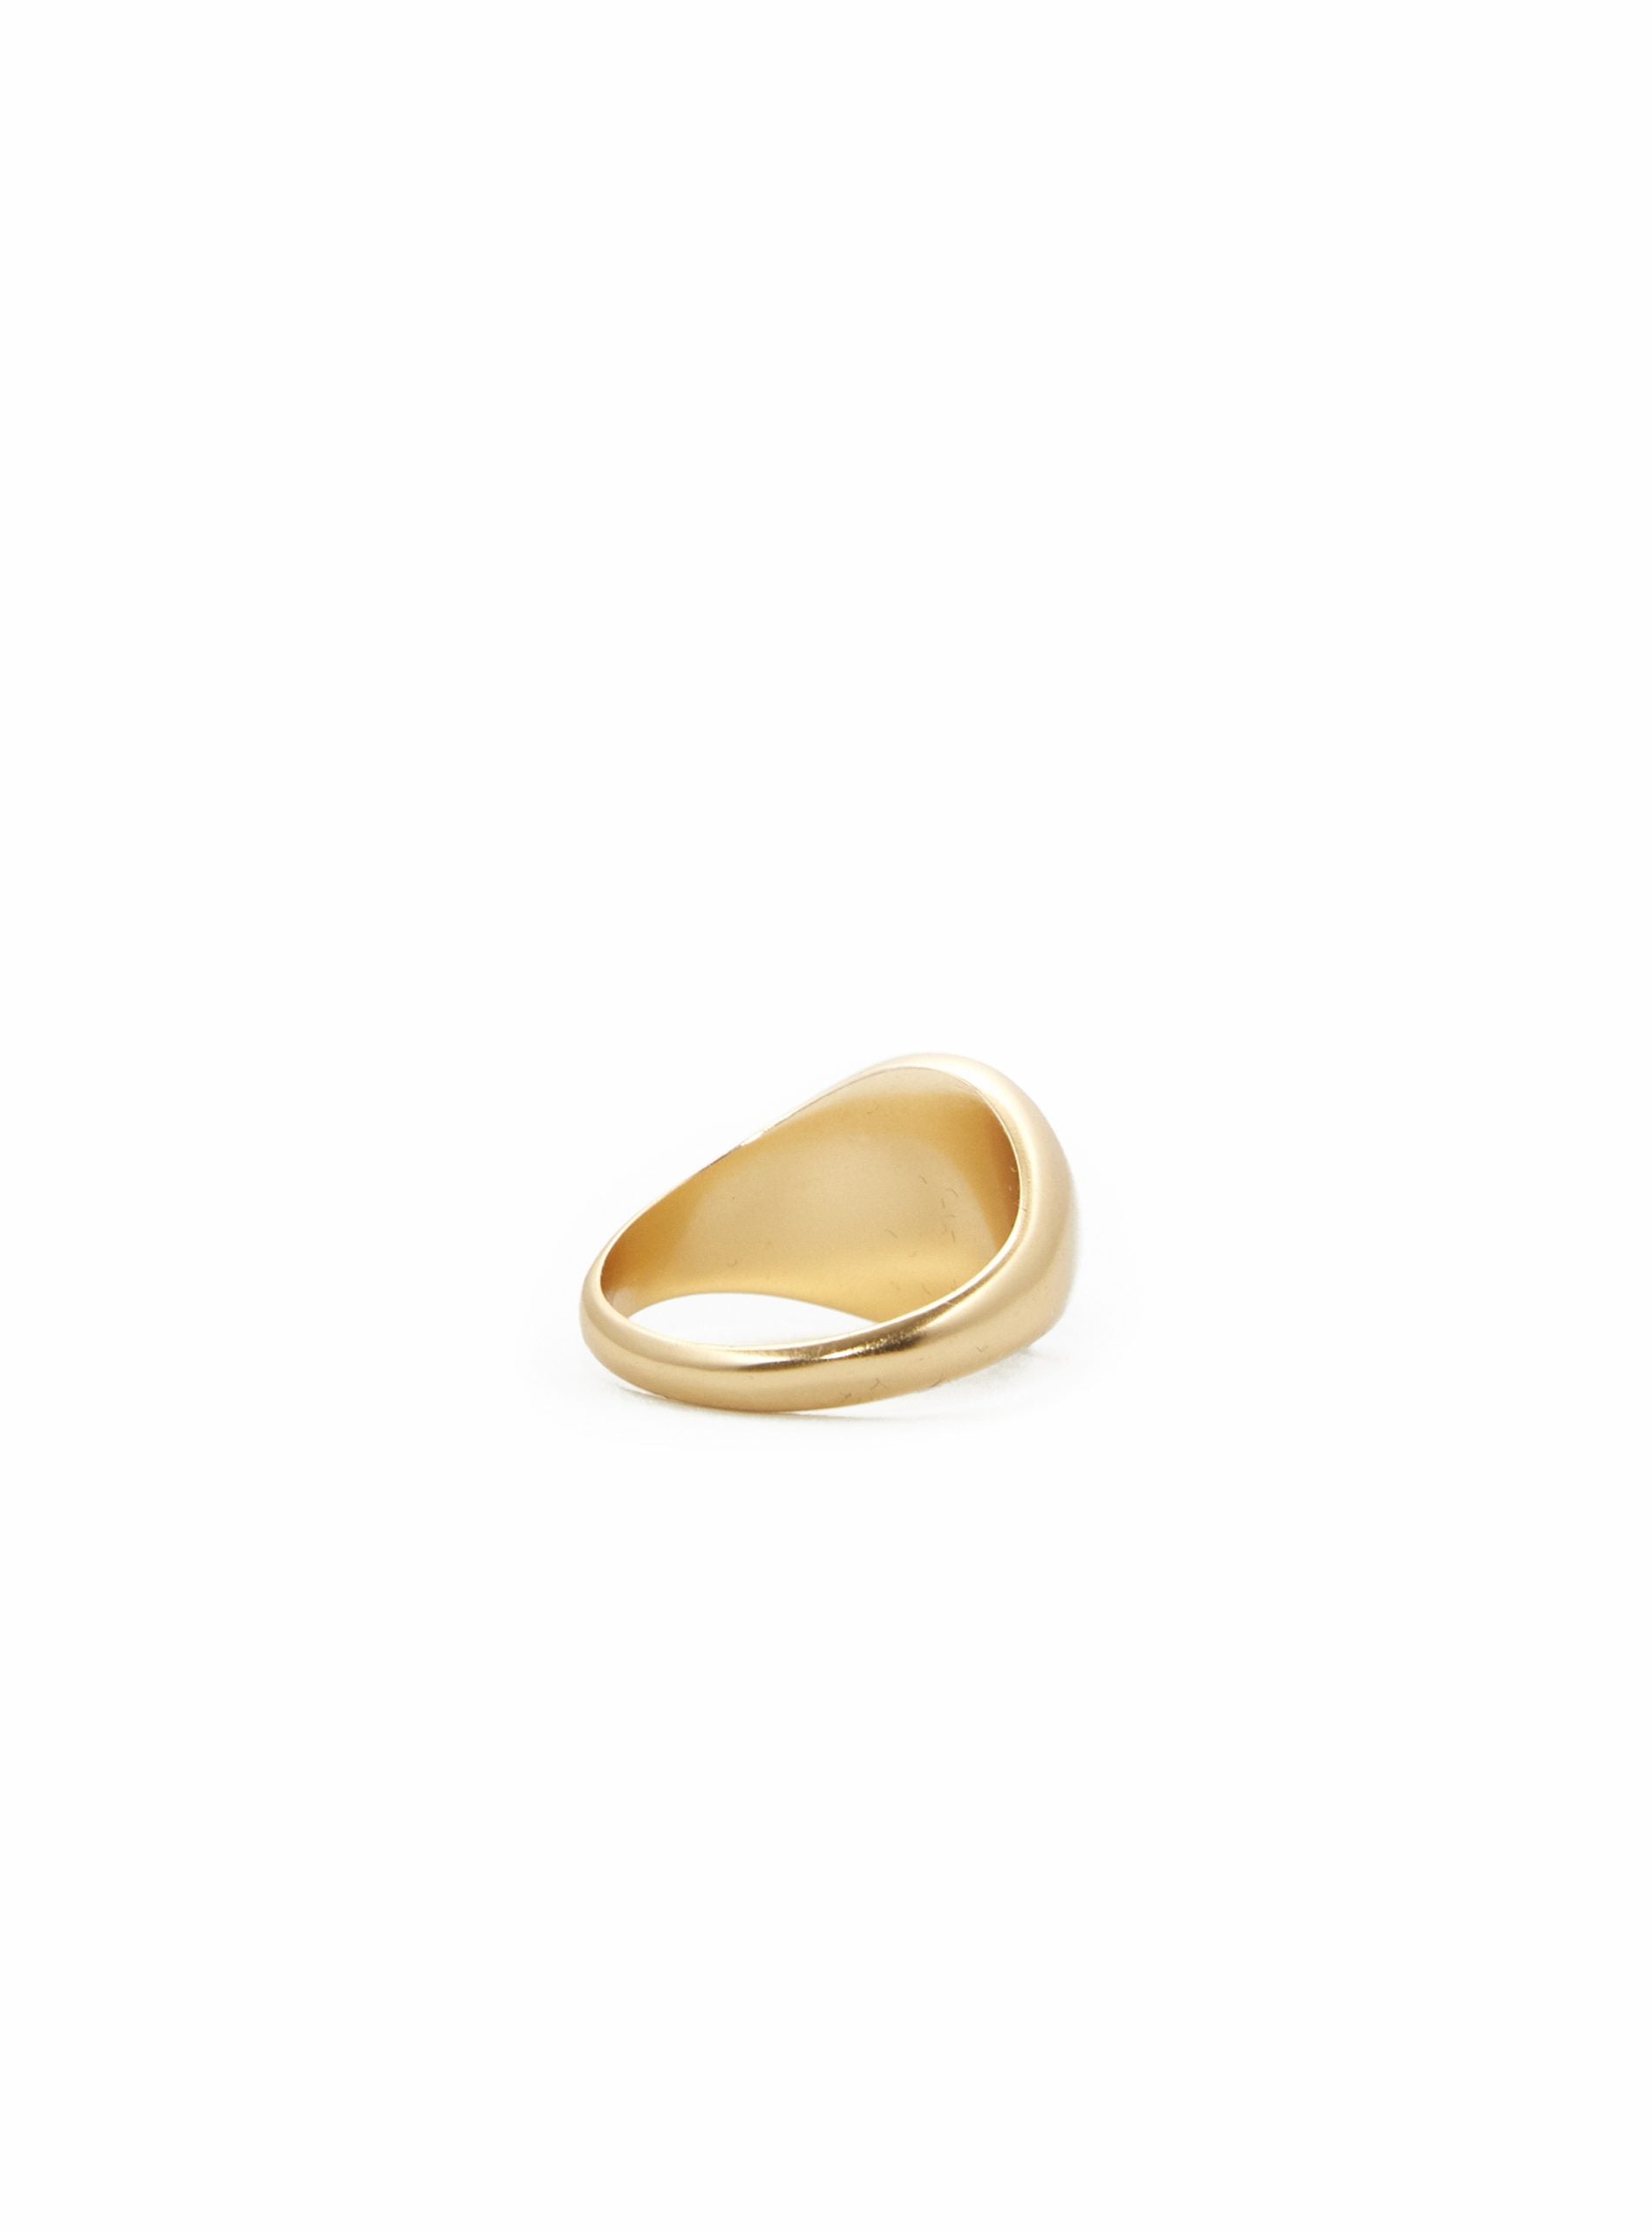 Medium Oval Resin Ring Gold